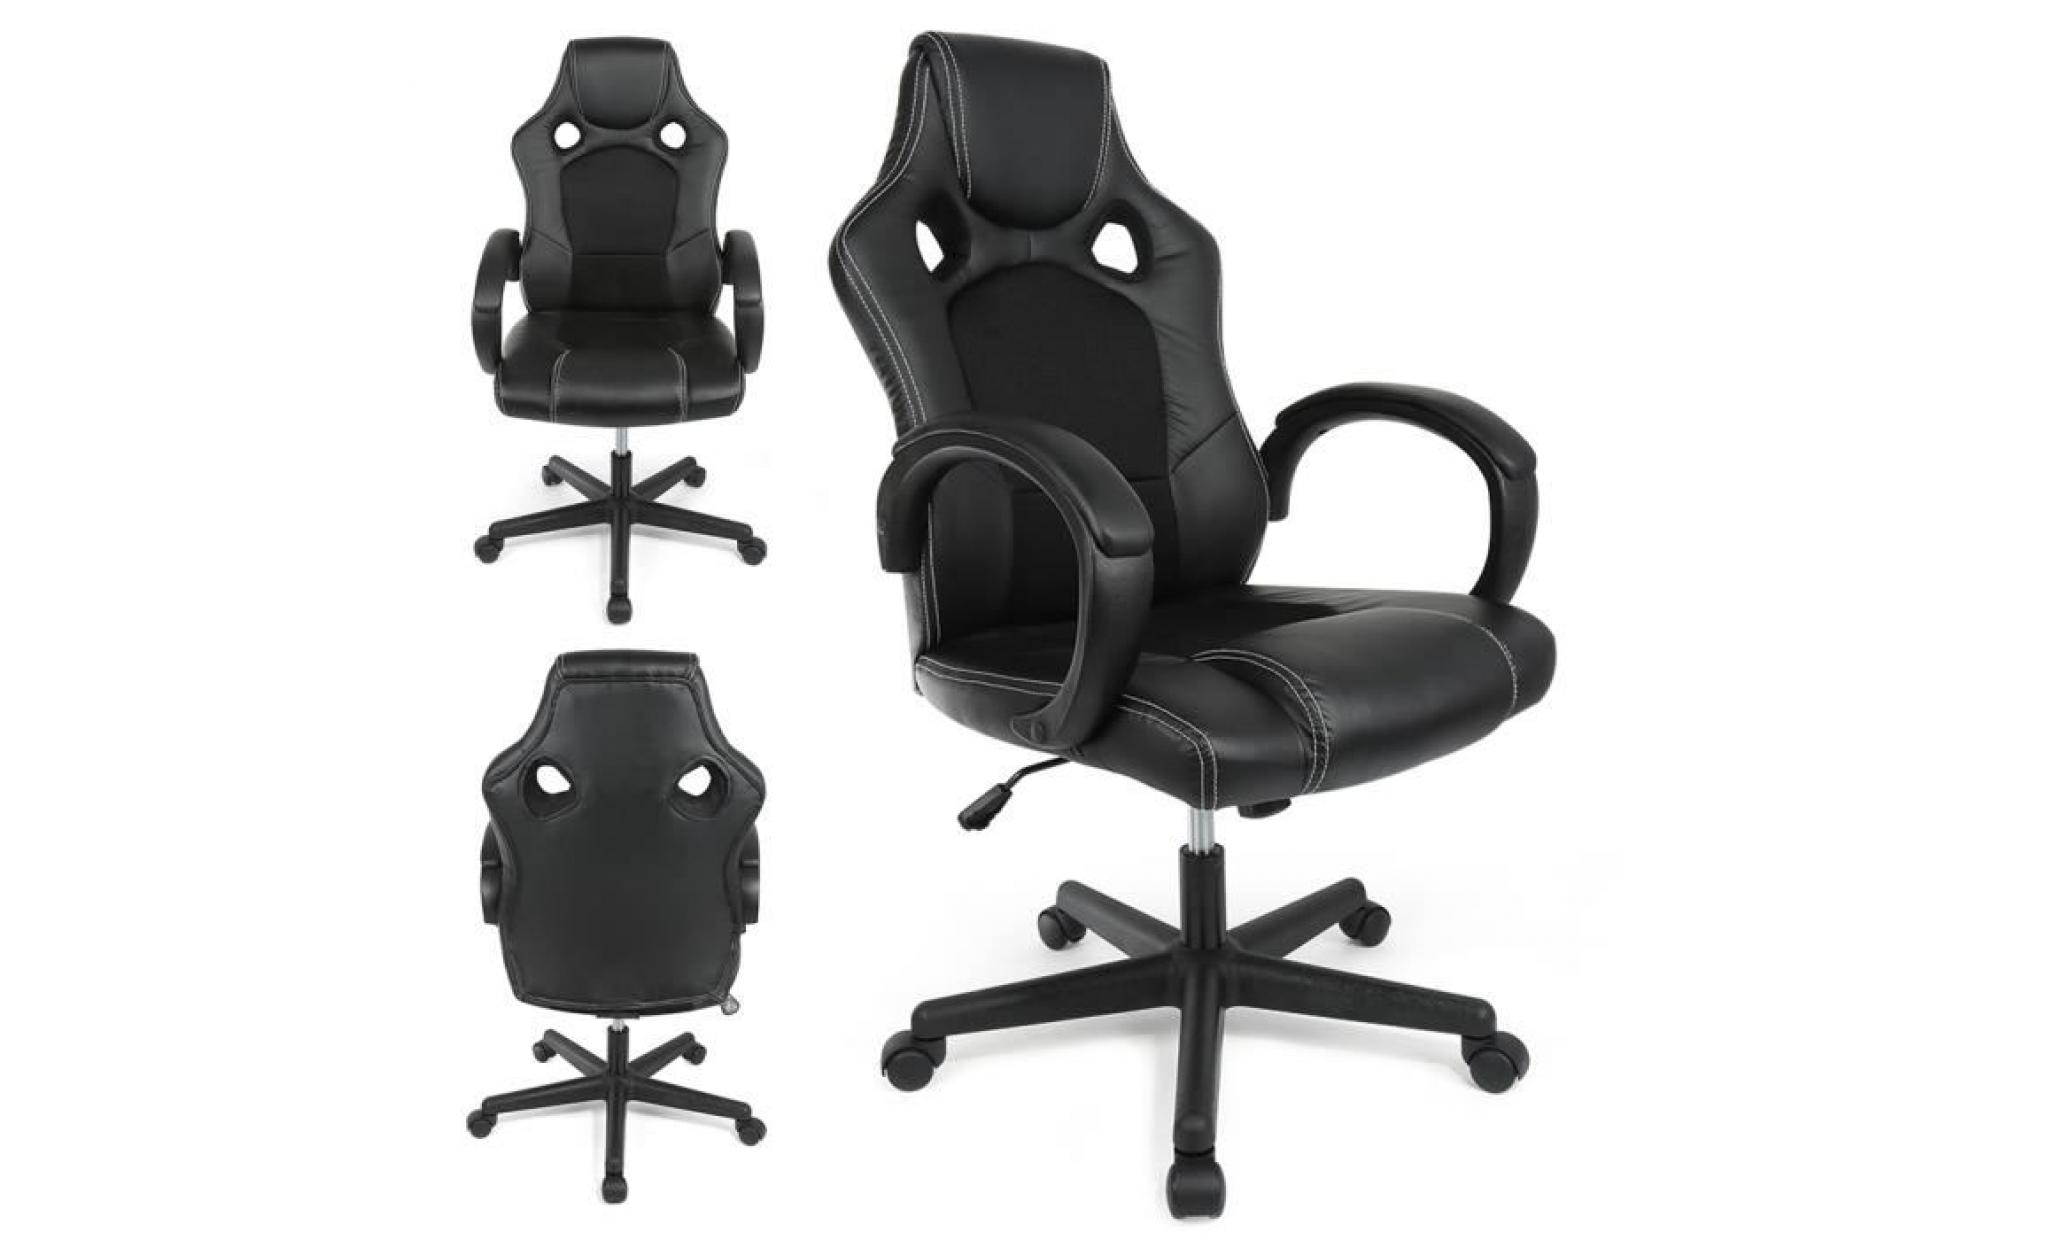 noir chaise fauteuil siege de bureau ergonomique accoudoirs rembourres, lift sgs controle pas cher